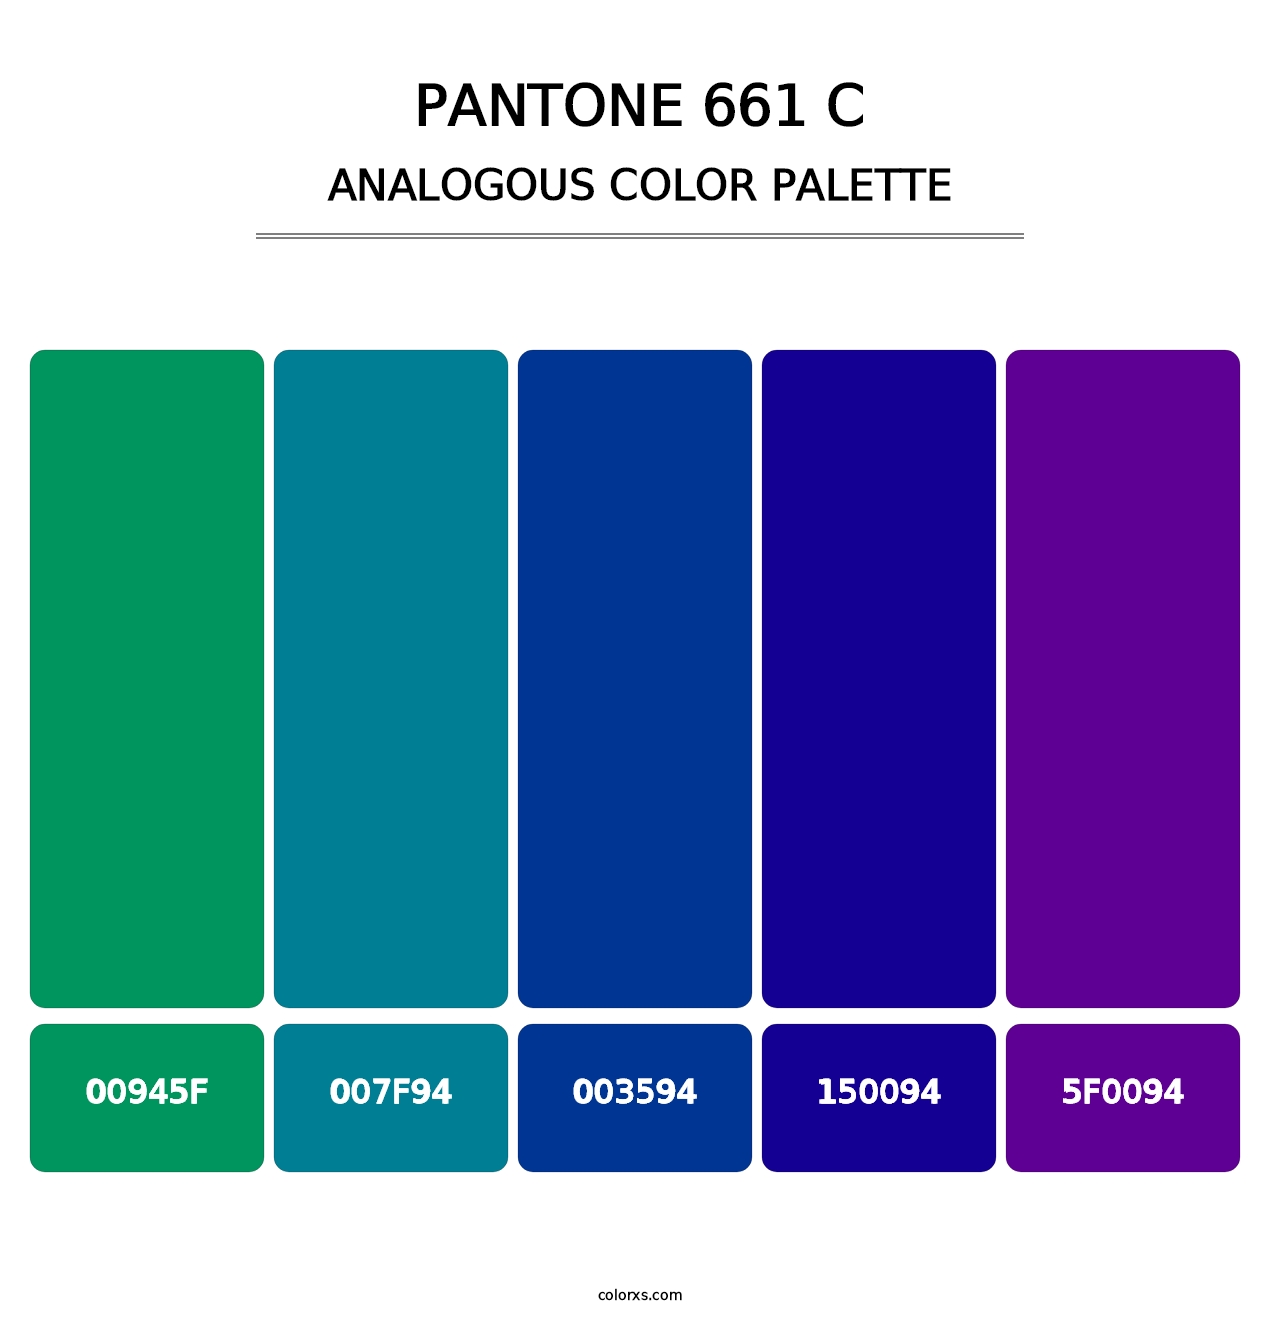 PANTONE 661 C - Analogous Color Palette